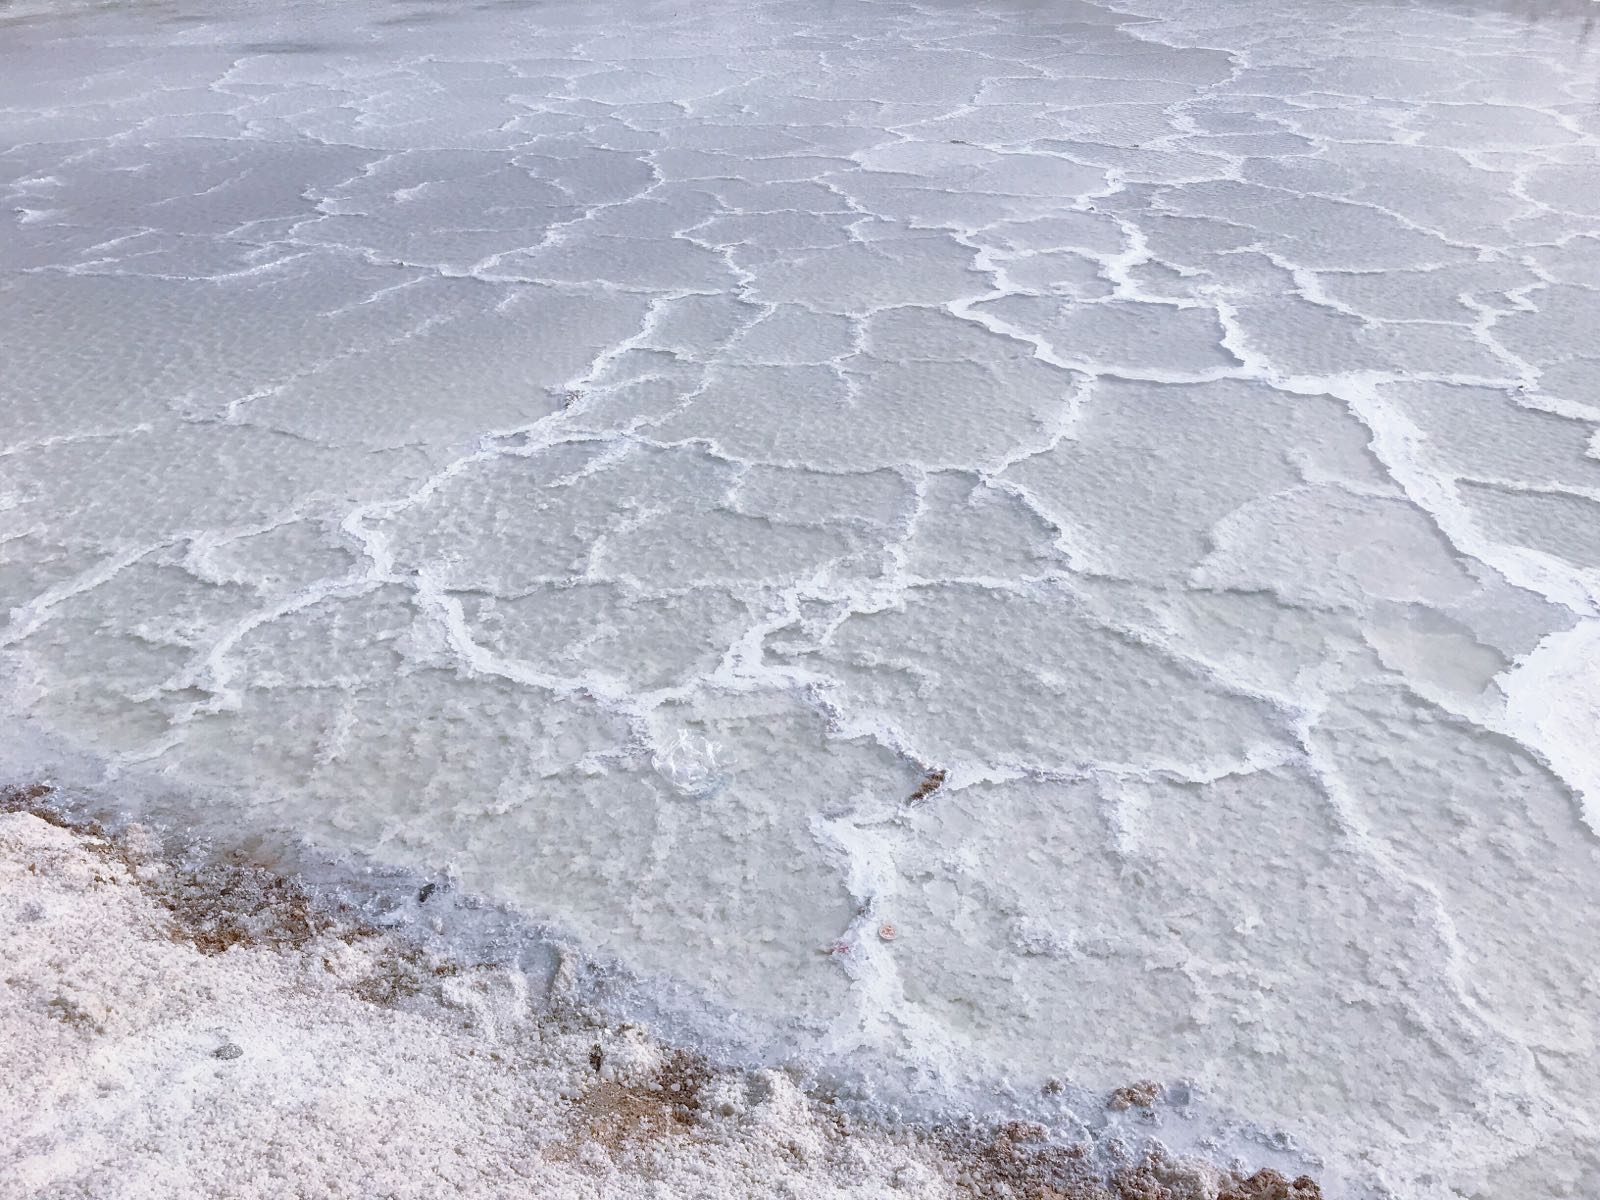 终于到了心心念念的茶卡盐湖。可惜因为最近在整修还是什么，把水排干了，所